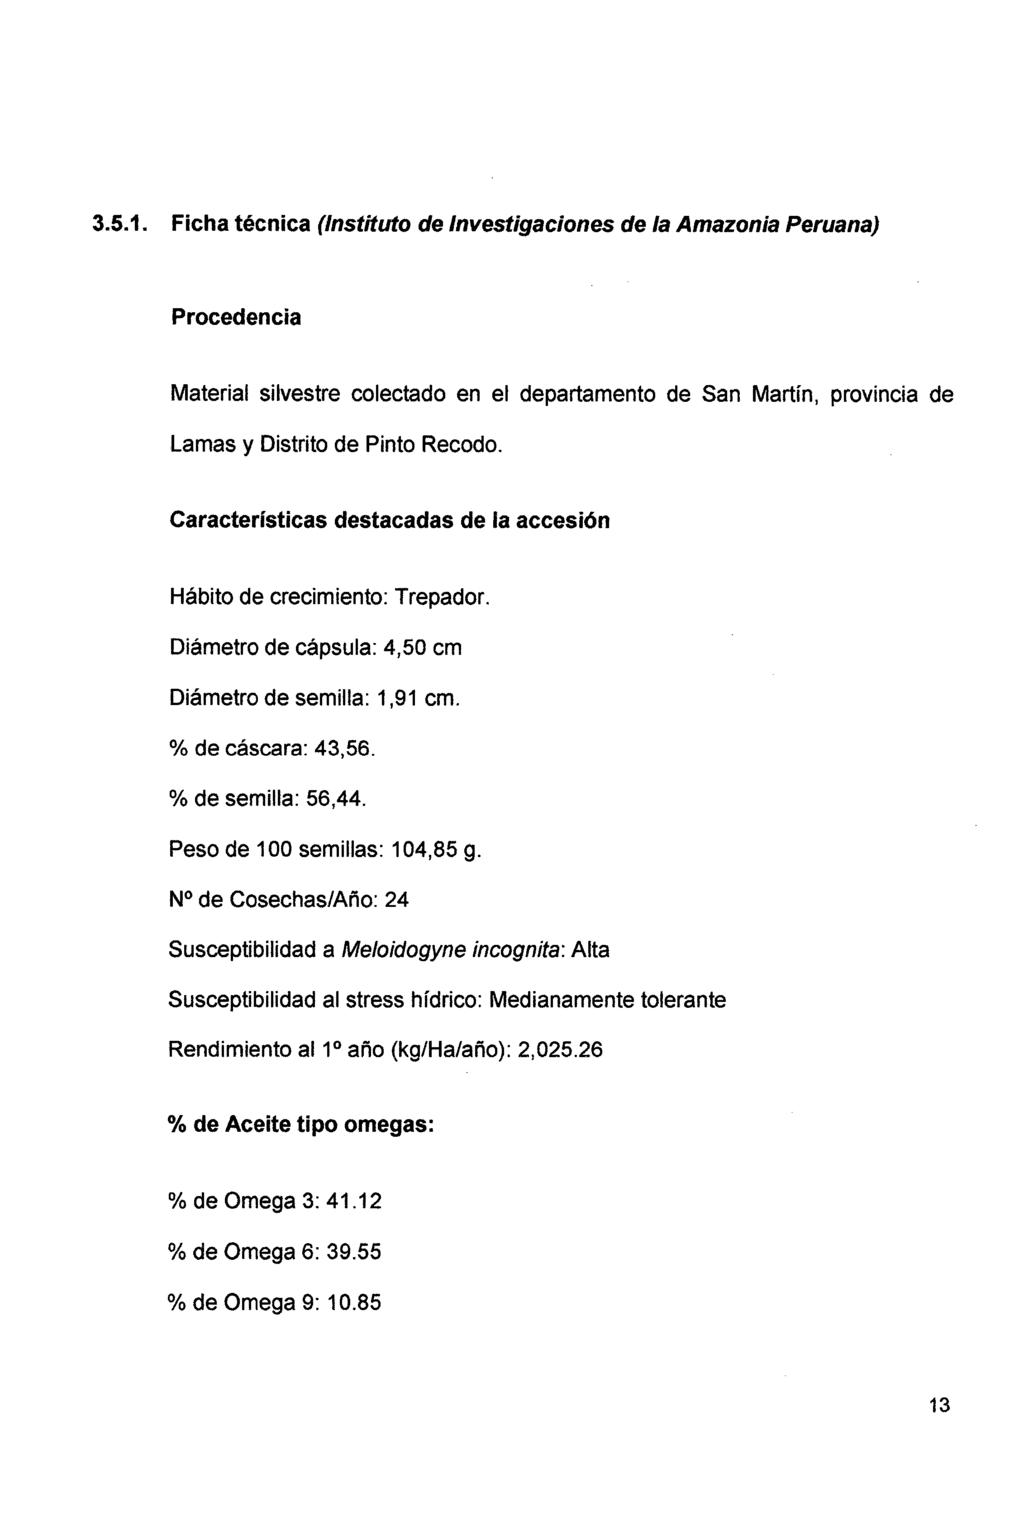 3.5.1. Ficha técnica (Instituto de Investigaciones de la Amazonia Peruana) Procedencia Material silvestre colectado en el departamento de San Martín, provincia de Lamas y Distrito de Pinto Recodo.